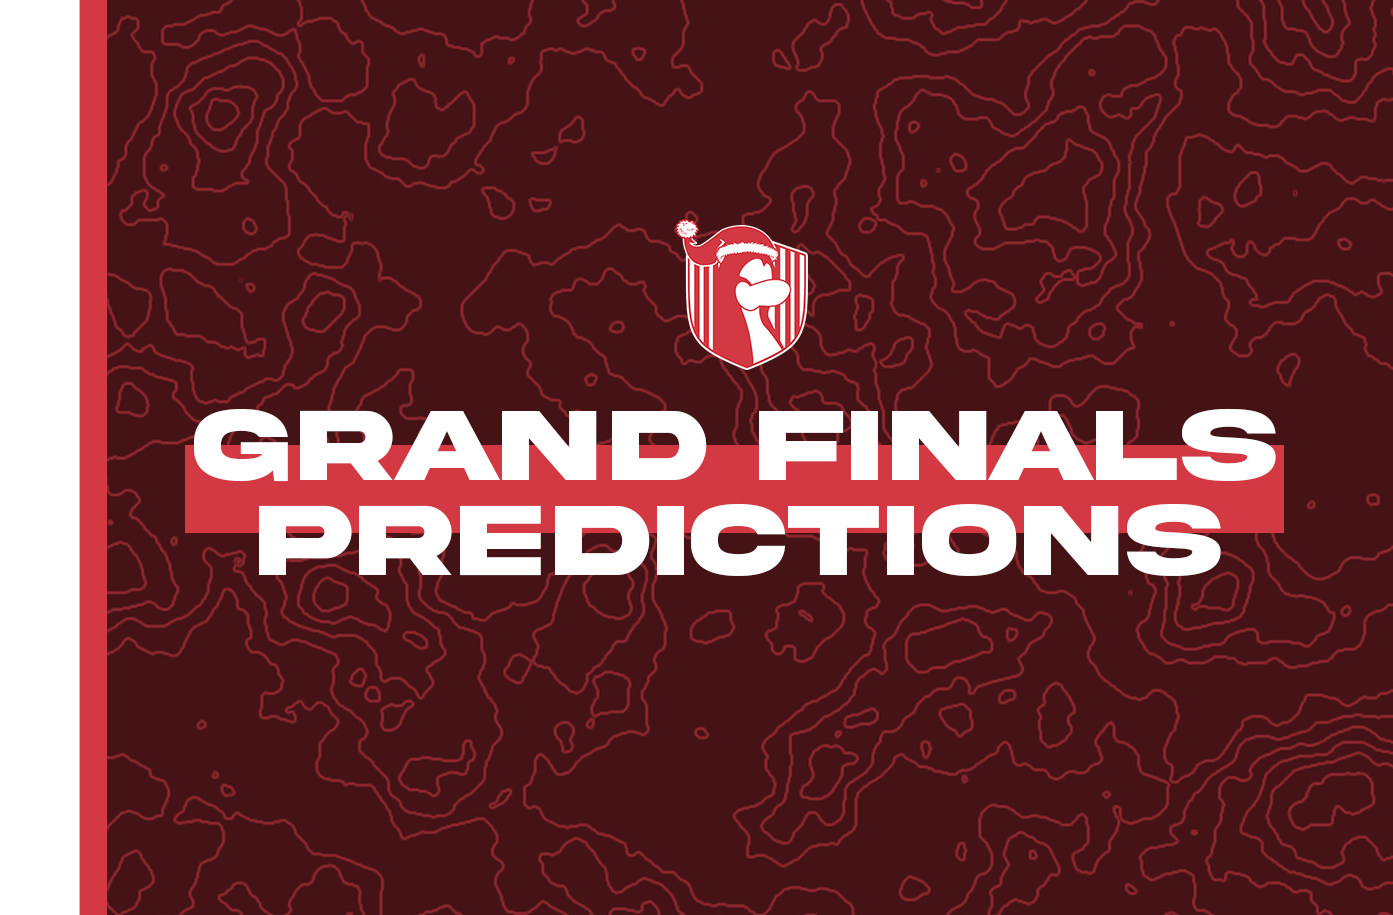 Grand Finals Predictions